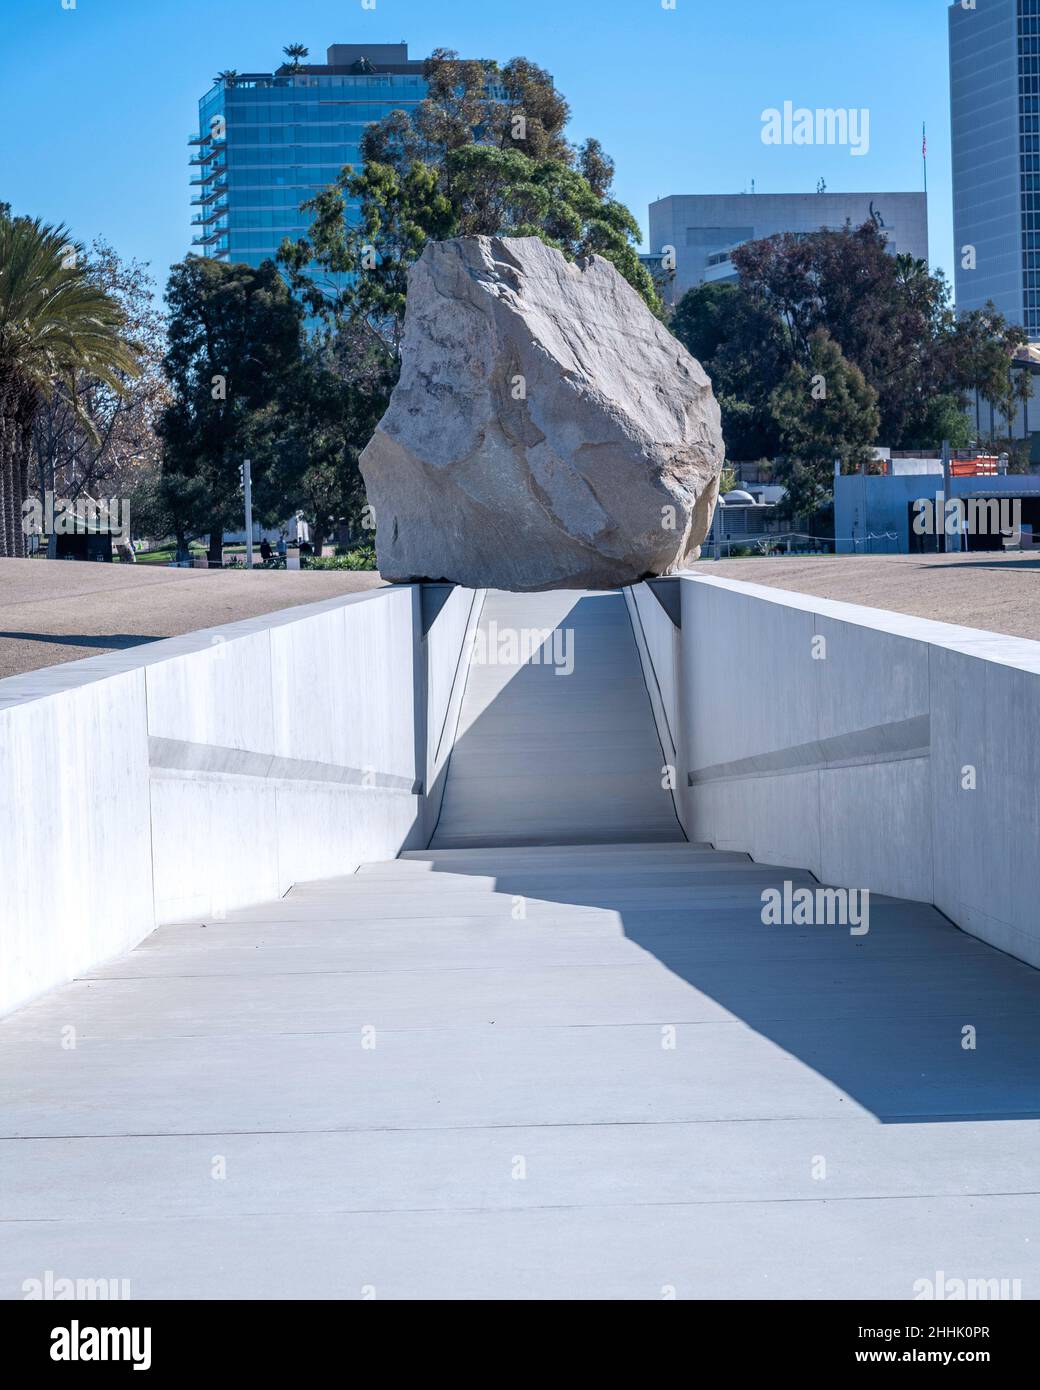 Los Angeles, CA, USA - 26 gennaio 2022: La scultura d'arte pubblica "Messa levitata" dell'artista Michael Heizer è esposta al LACMA di Los Angeles, CA. Foto Stock